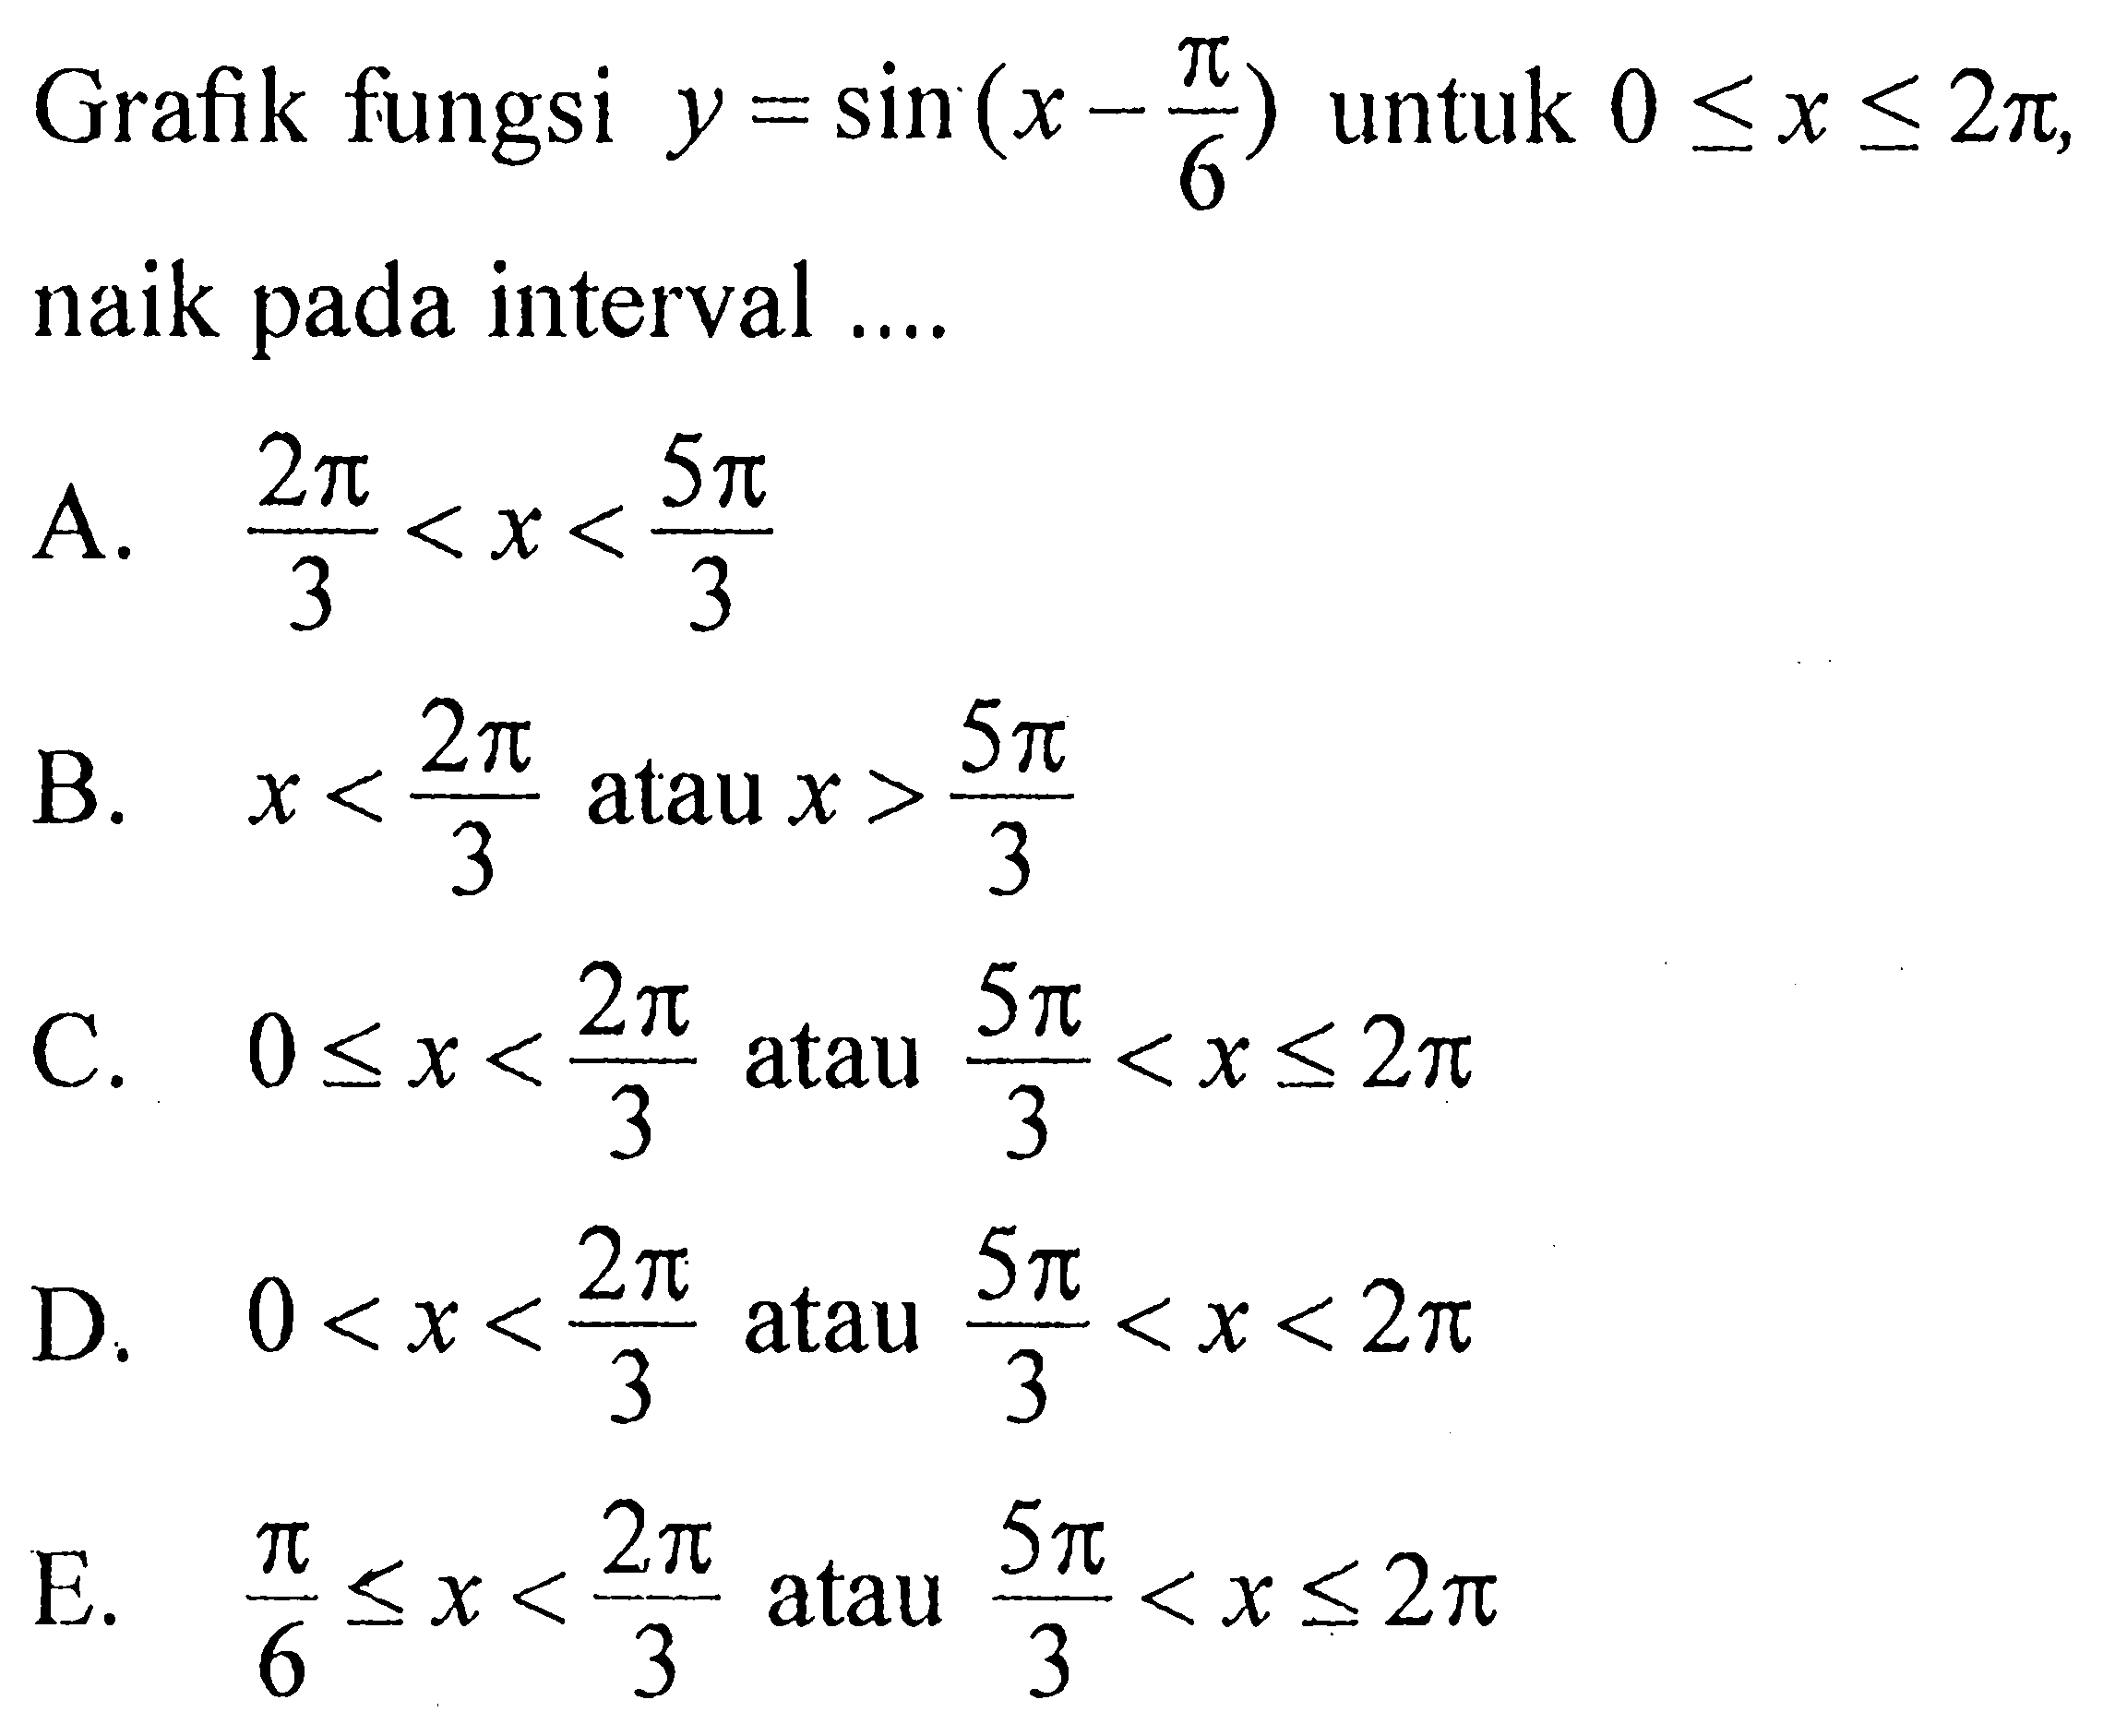 Grafik fungsi  y=sin (x-pi/6)  untuk  0 <= x <= 2 pi , naik pada interval ....